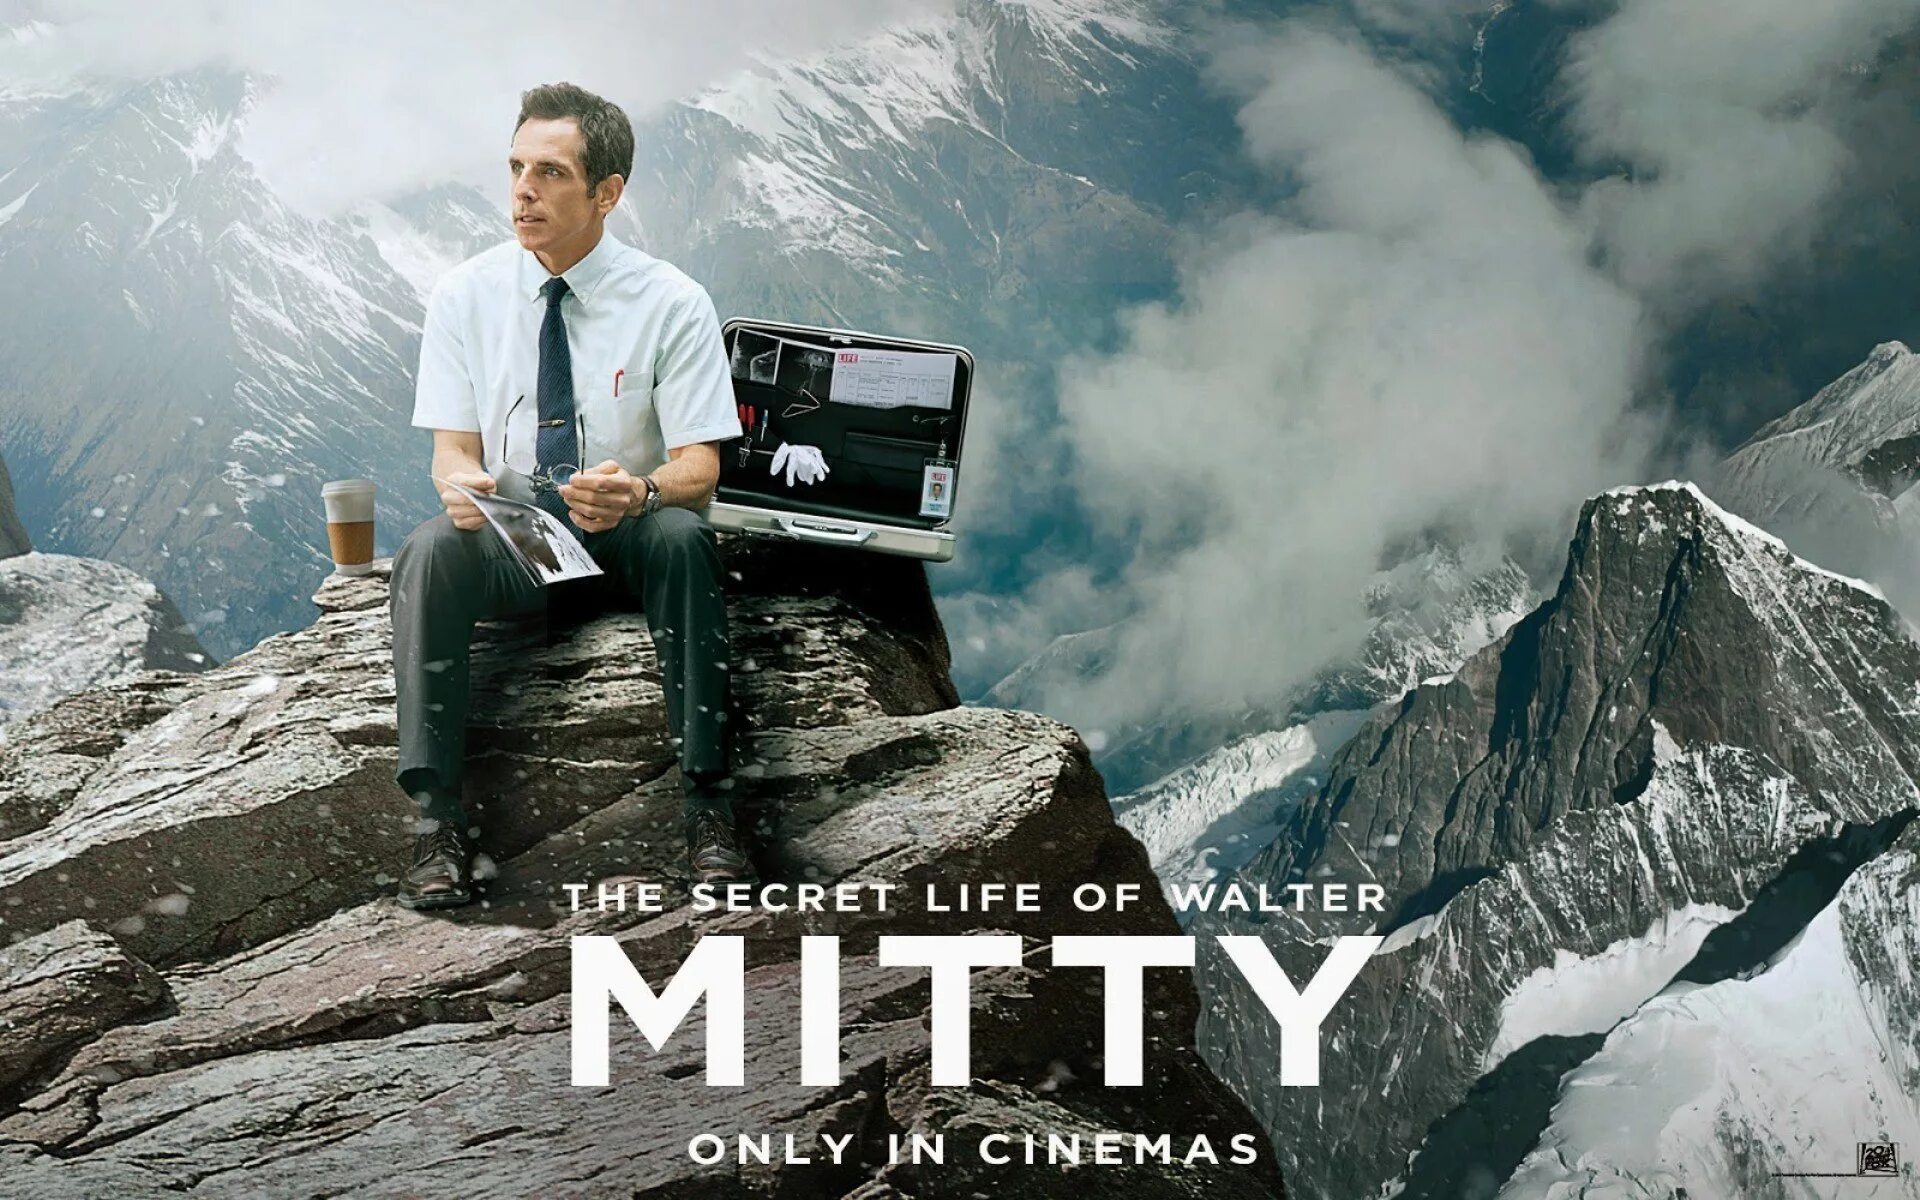 Невероятные приключения уолтера. The Secret Life of Walter Mitty, 2013. Тайная жизнь Волтера мити. Удивительная жизнь мистера Митти.